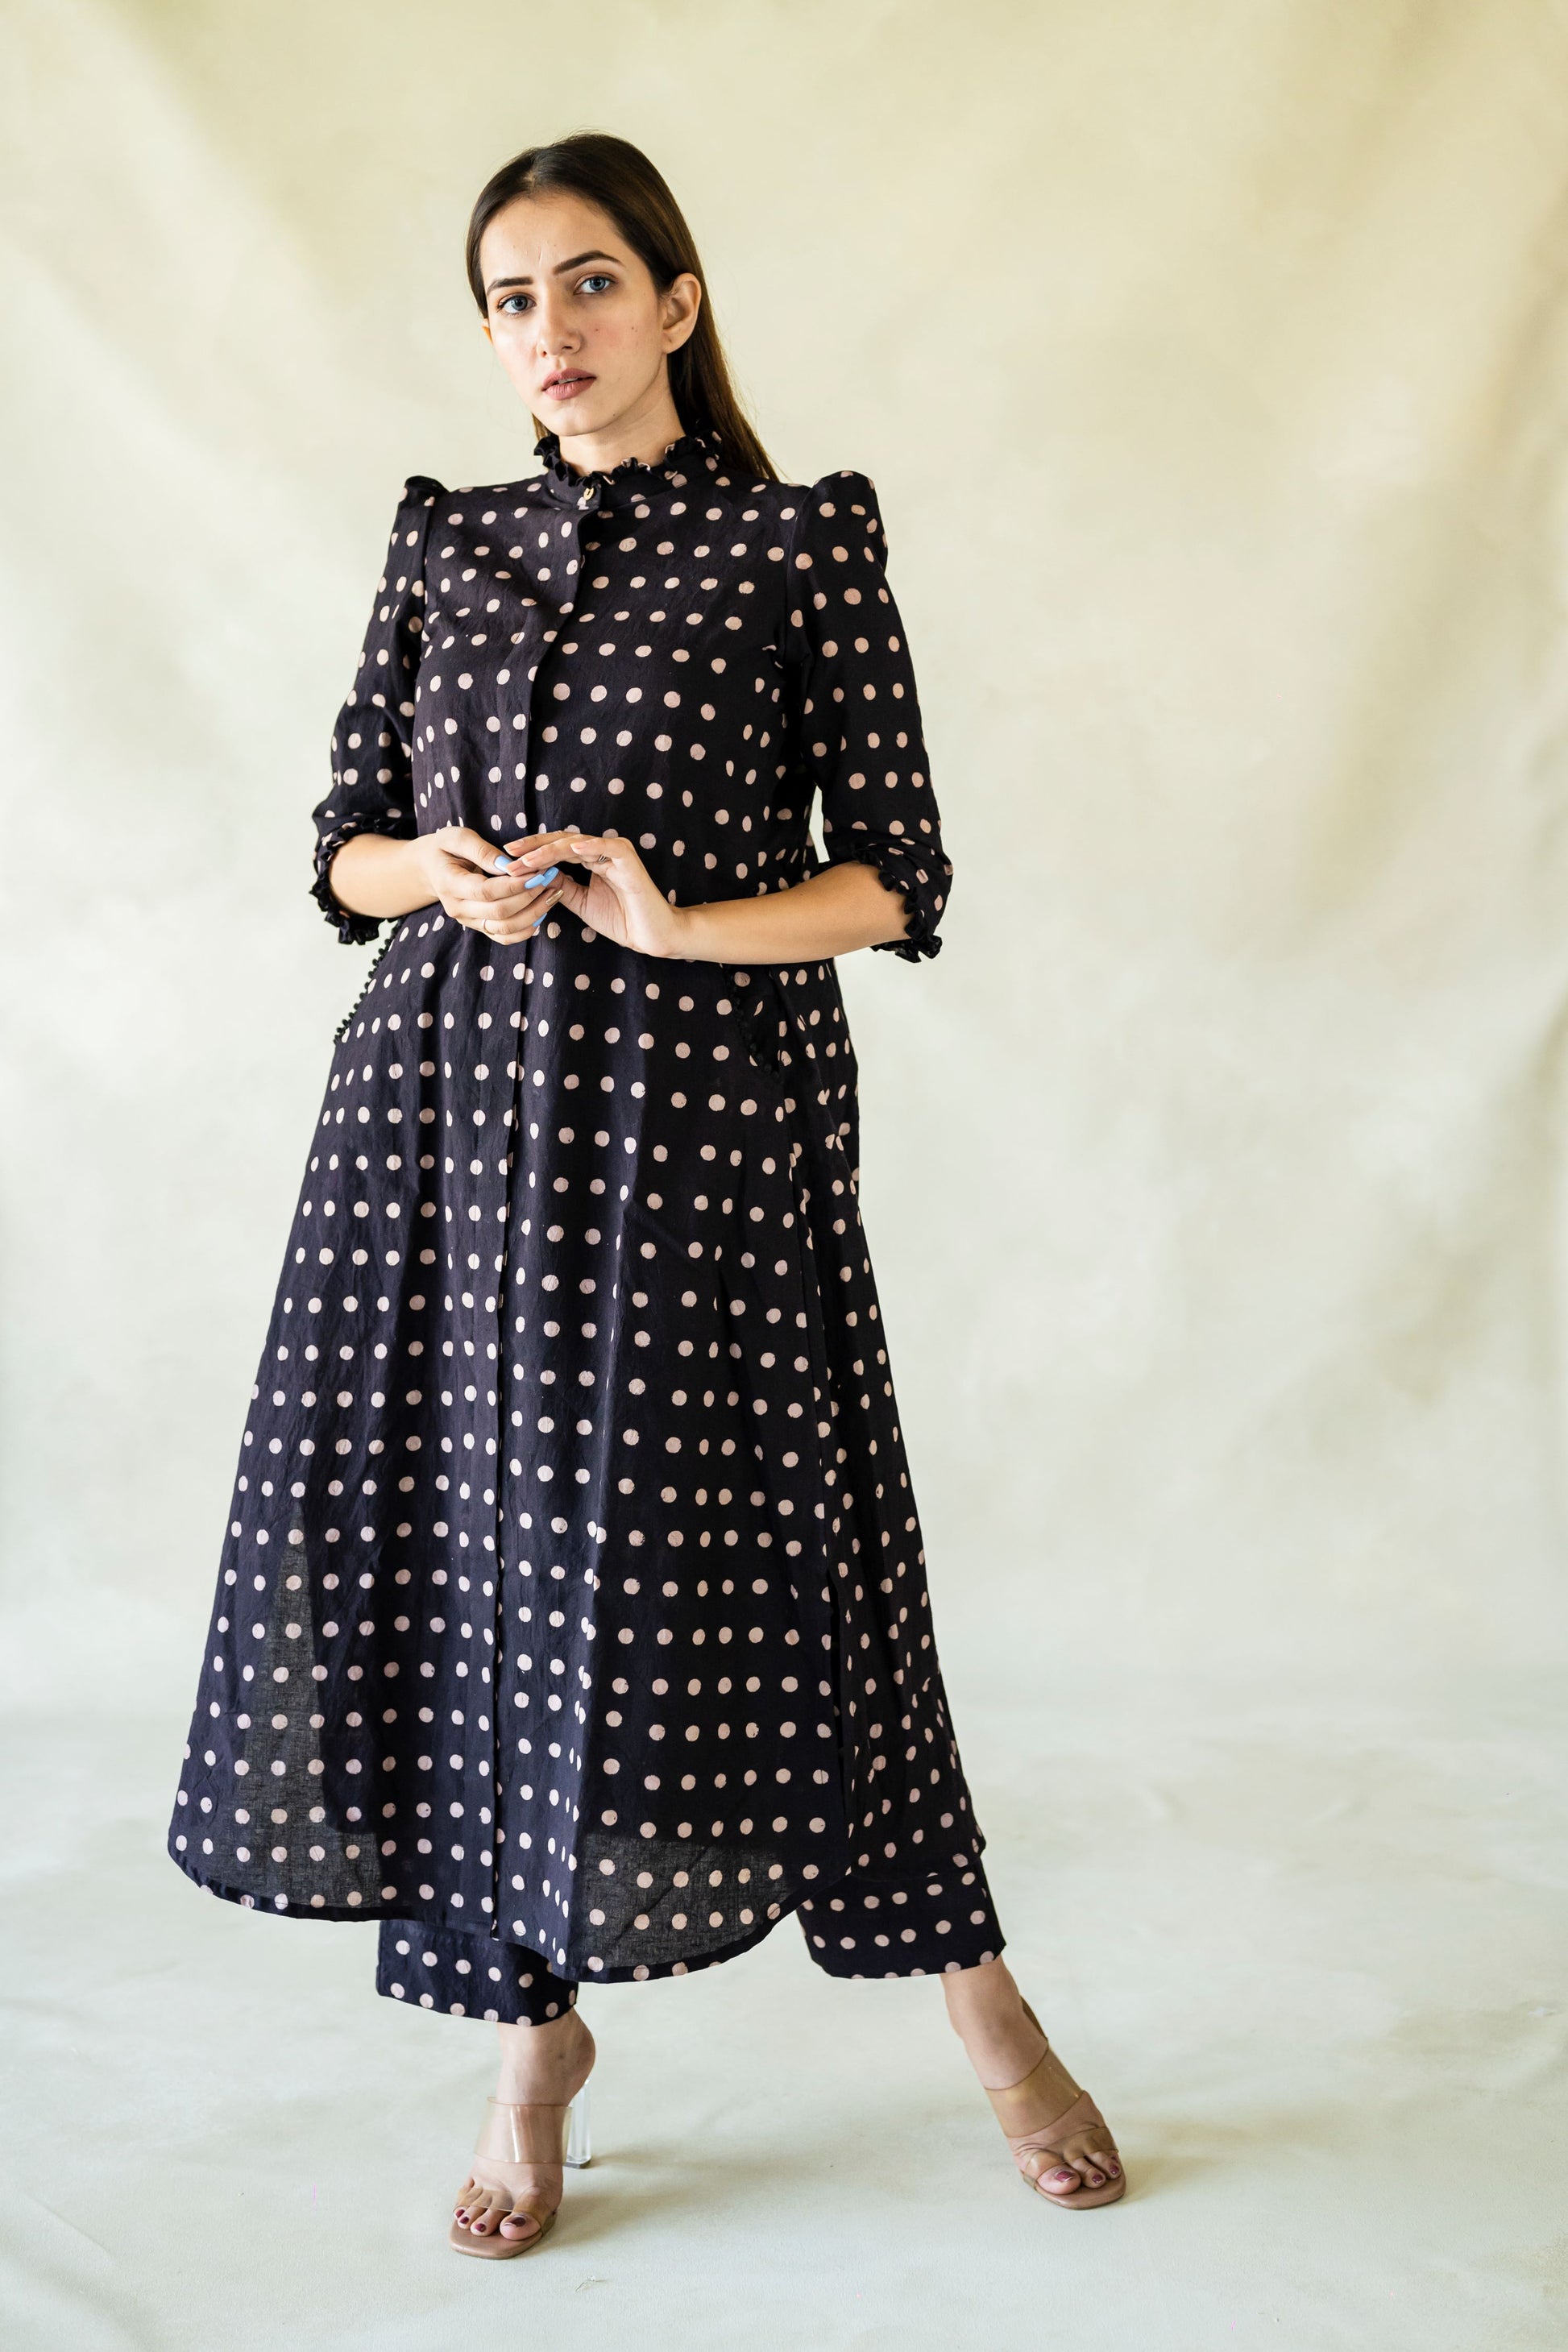 Black and white polka dots coord set, Handmade polka dots kurta and pants set, Natural dyed black polka dots coord set in cotton, Slow fashion, Handmade clothing